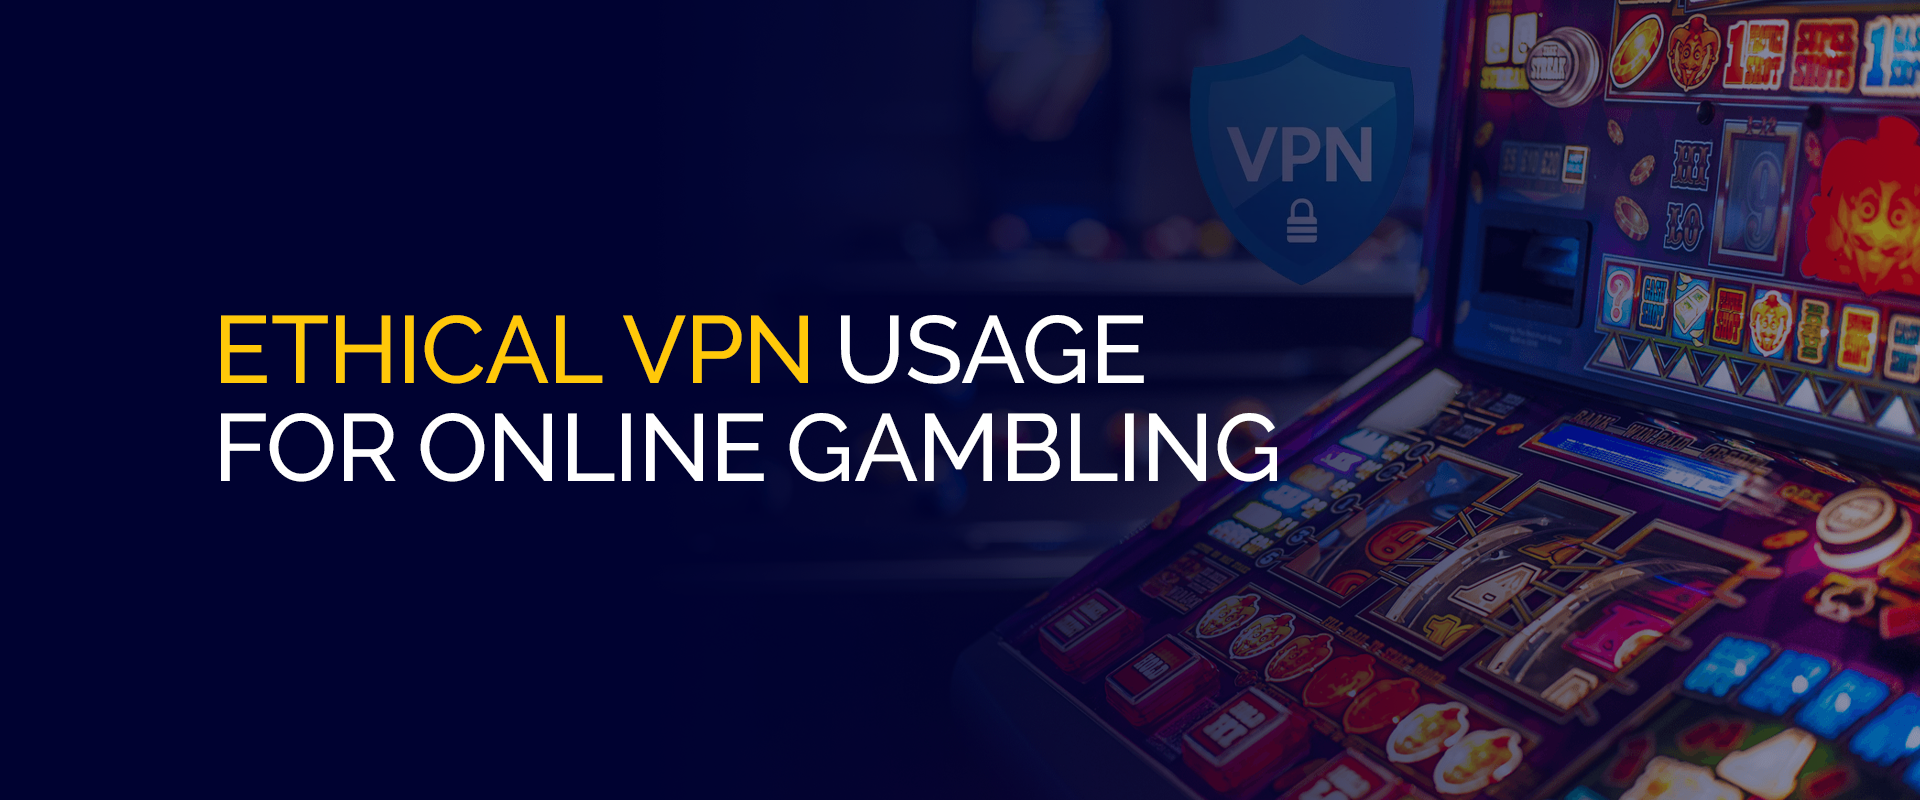 Utilizzo etico della VPN per il gioco d'azzardo online